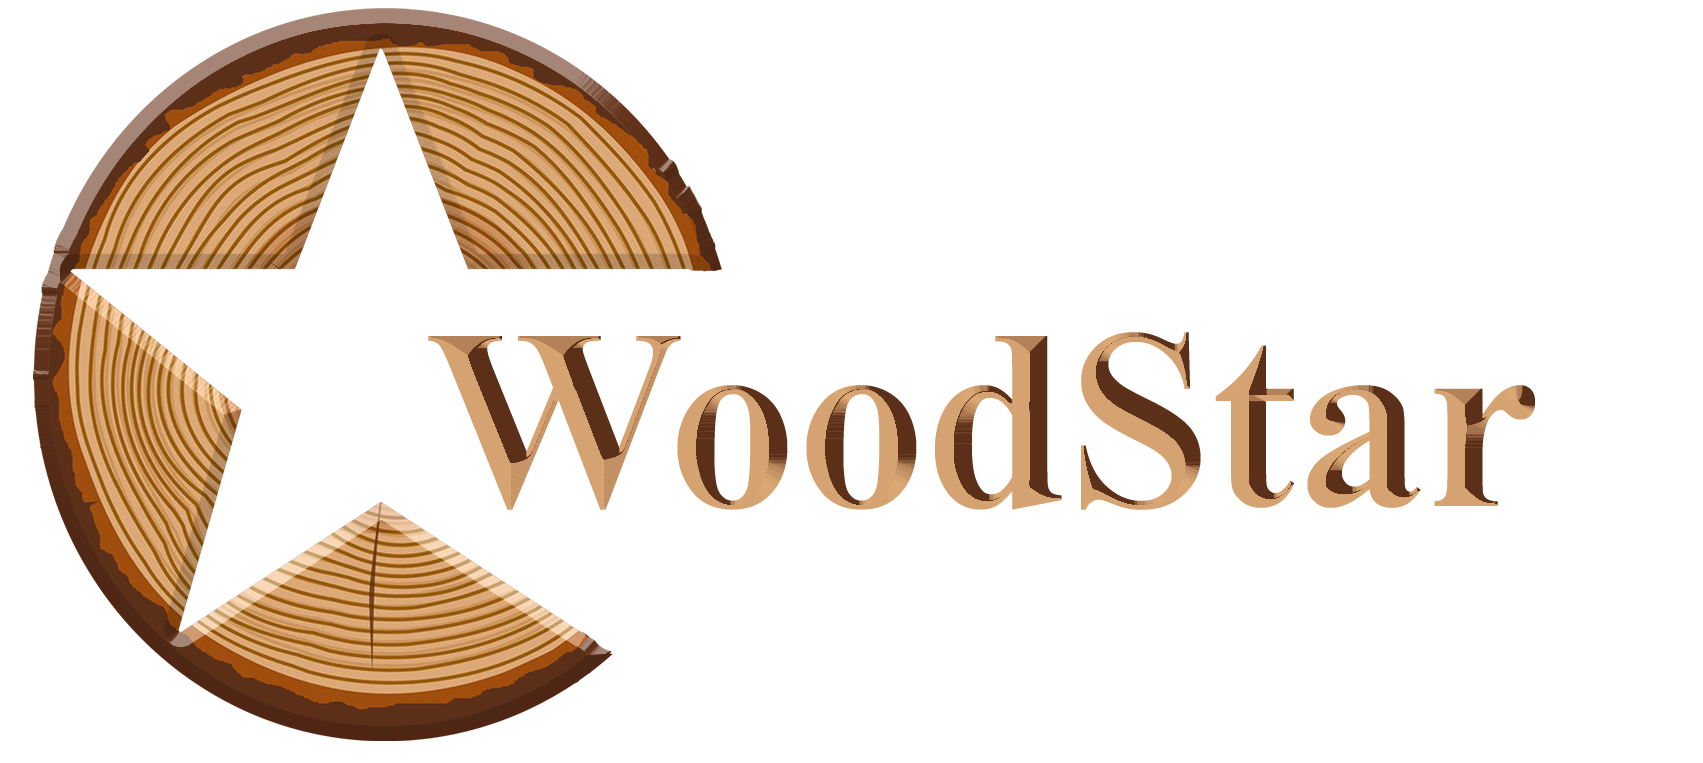 woodstar new logo white tm